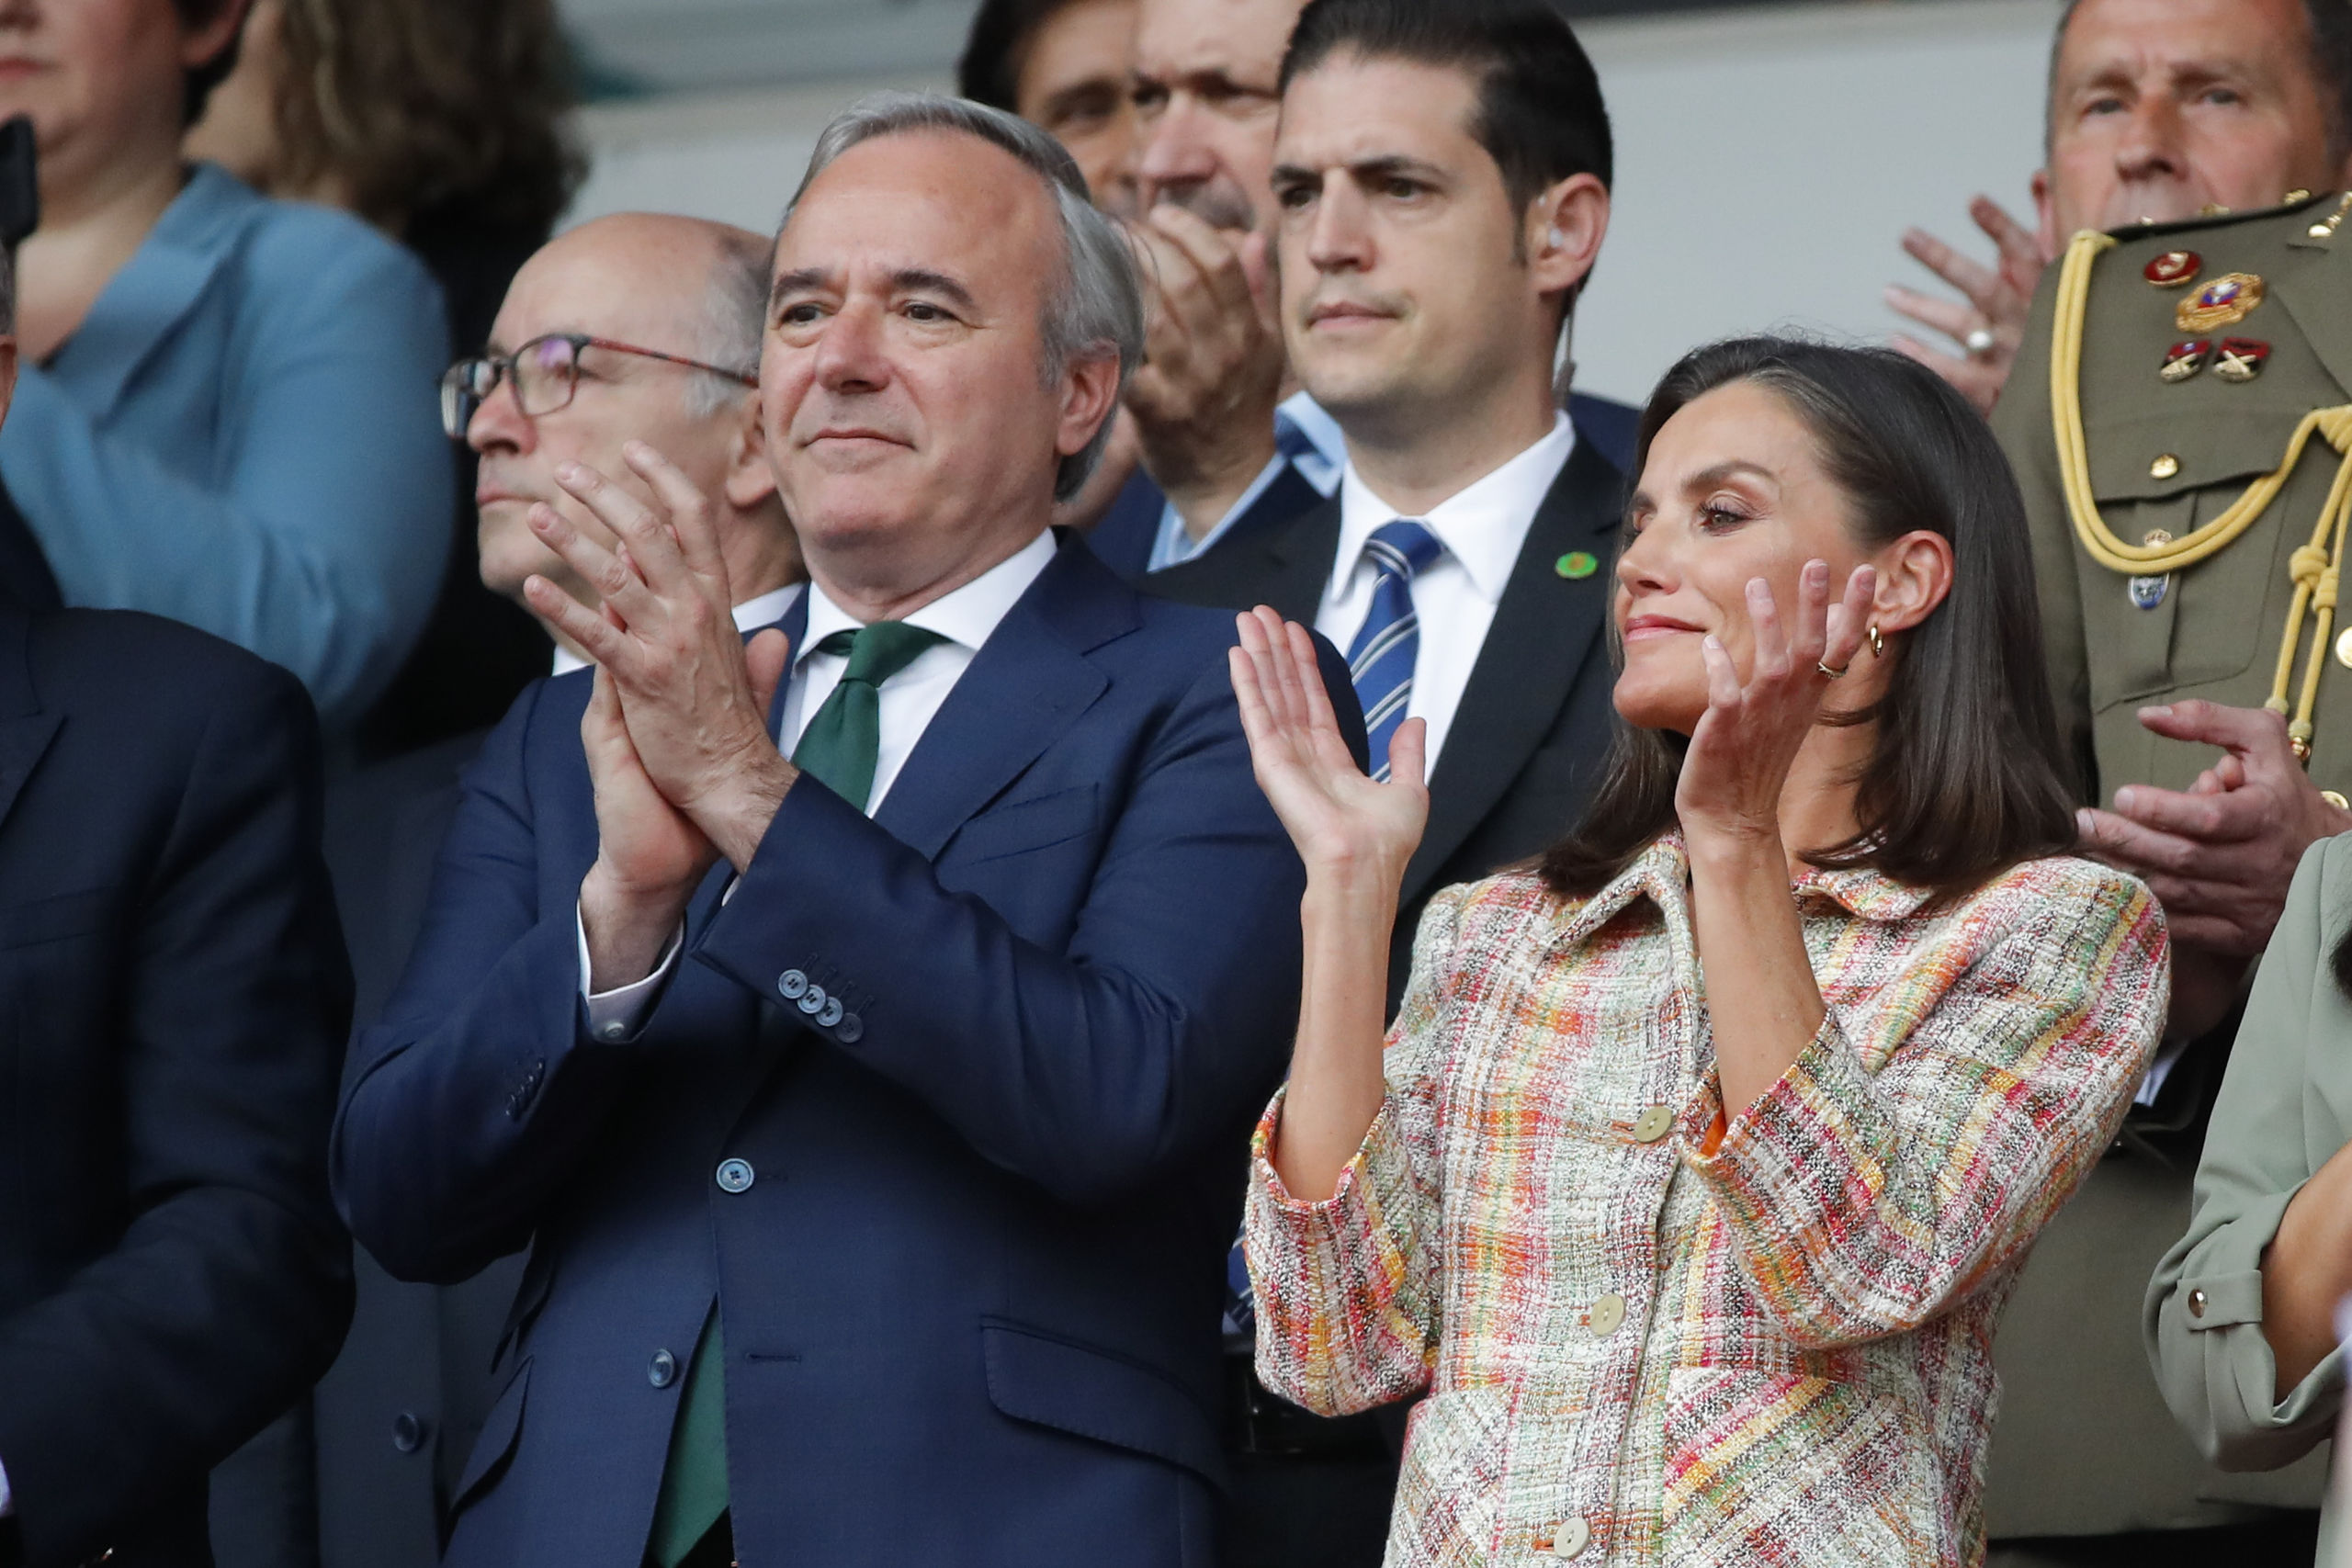 La Reina Letizia preside la final de la Copa de la Reina en Zaragoza tras años de ausencia